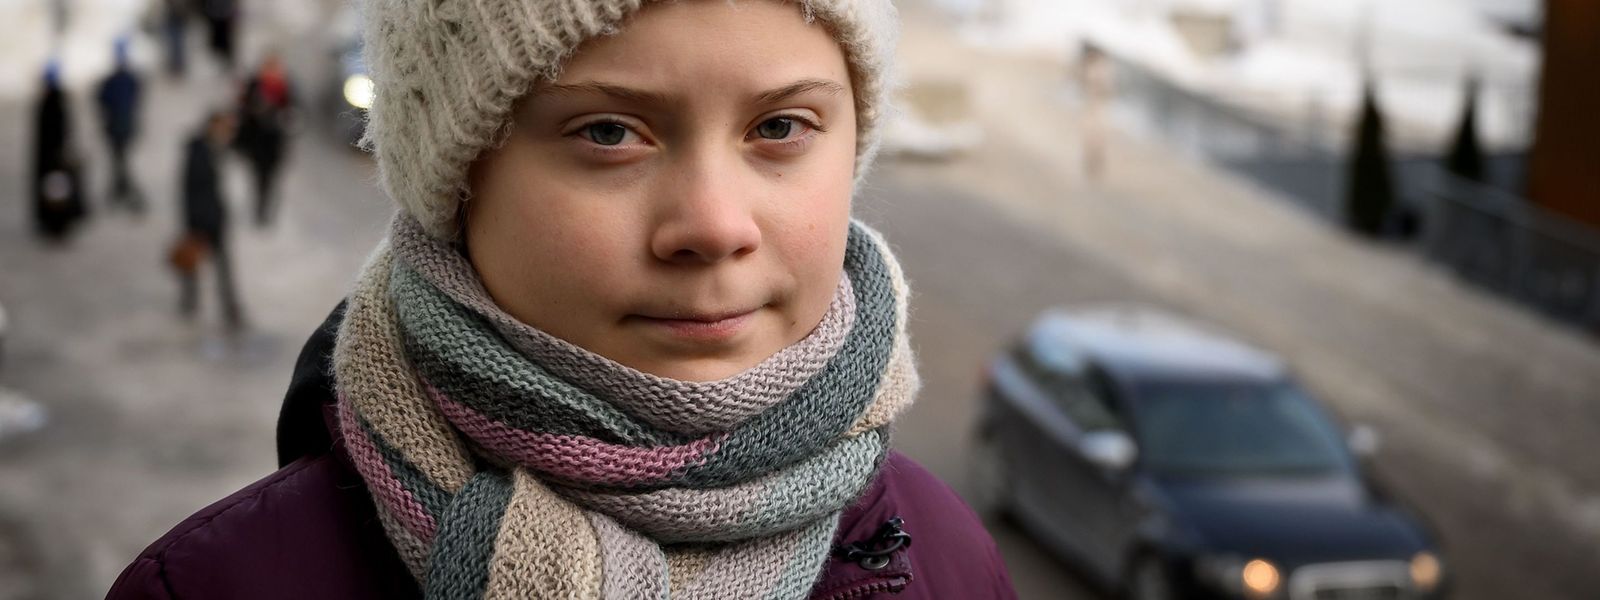 Greta Thunberg, jeune Suédoise de 16 ans, est une militante très active qui s'est rendue à Davos, pour sensibiliser à l'urgence climatique au Forum économique mondial.